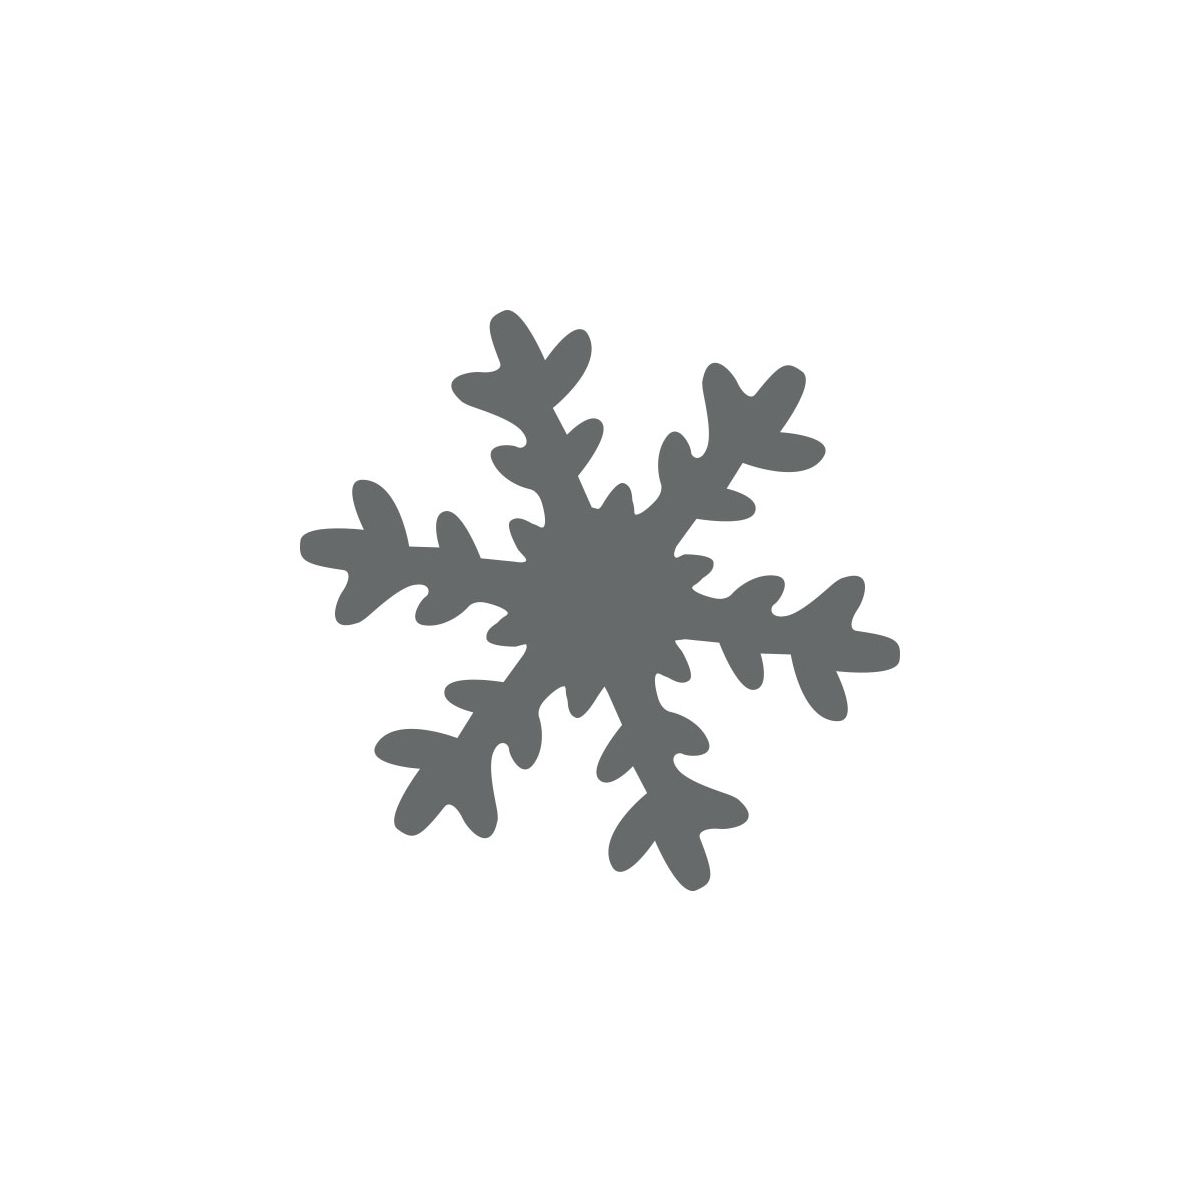 Dziurkacz ozdobny Craft-Fun Series 25mm płatek śniegu Titanum (T-8810-13e)